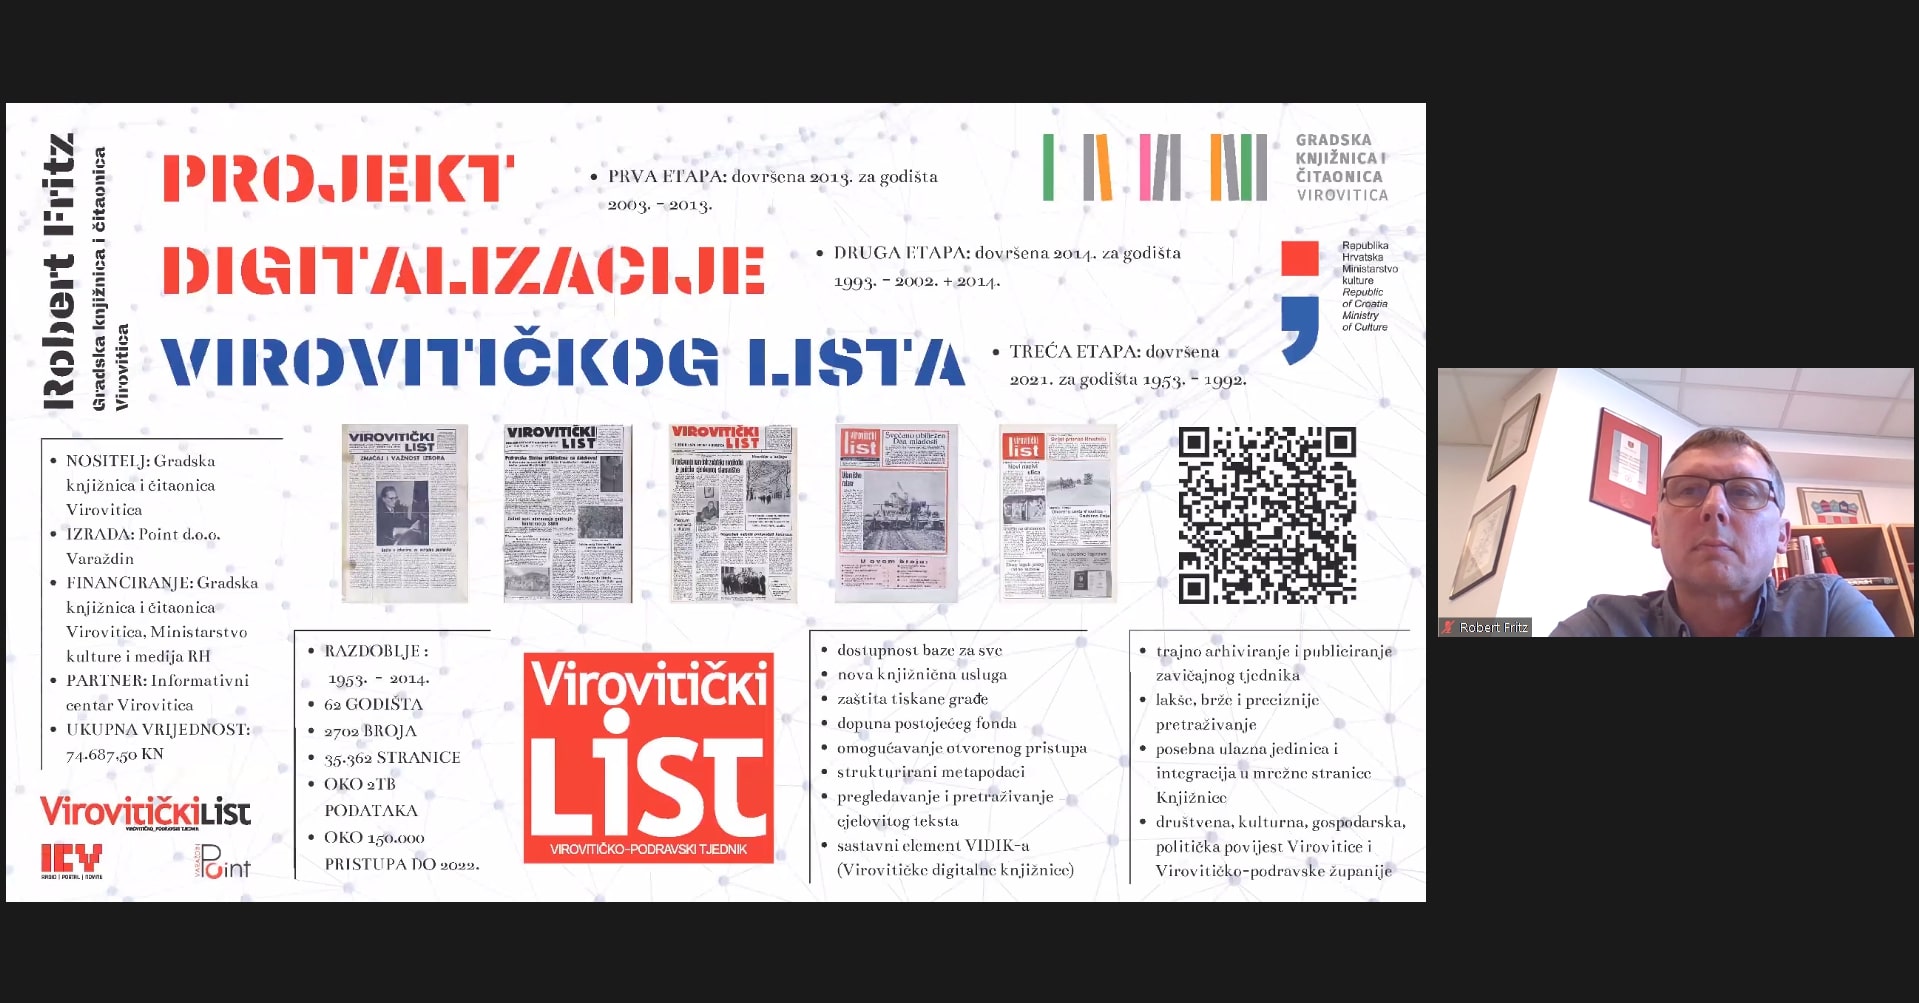 Robert Fritz (Gradska knjižnica i čitaonica Virovitica): Projekt digitalizacije Virovitičkog lista